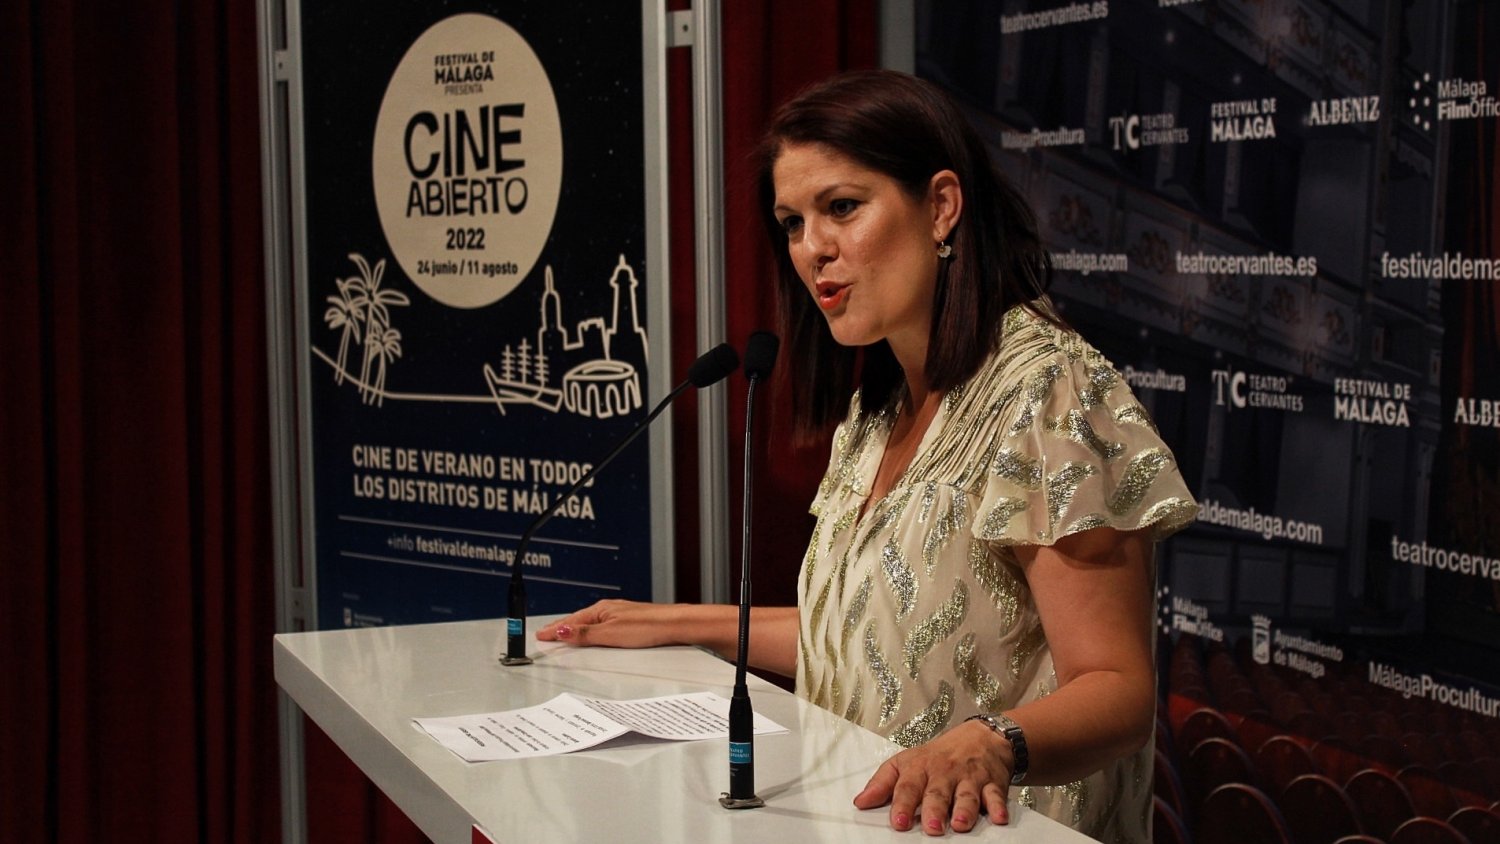 Regresa Cine Abierto con 118 proyecciones gratuitas en todos los distritos de Málaga